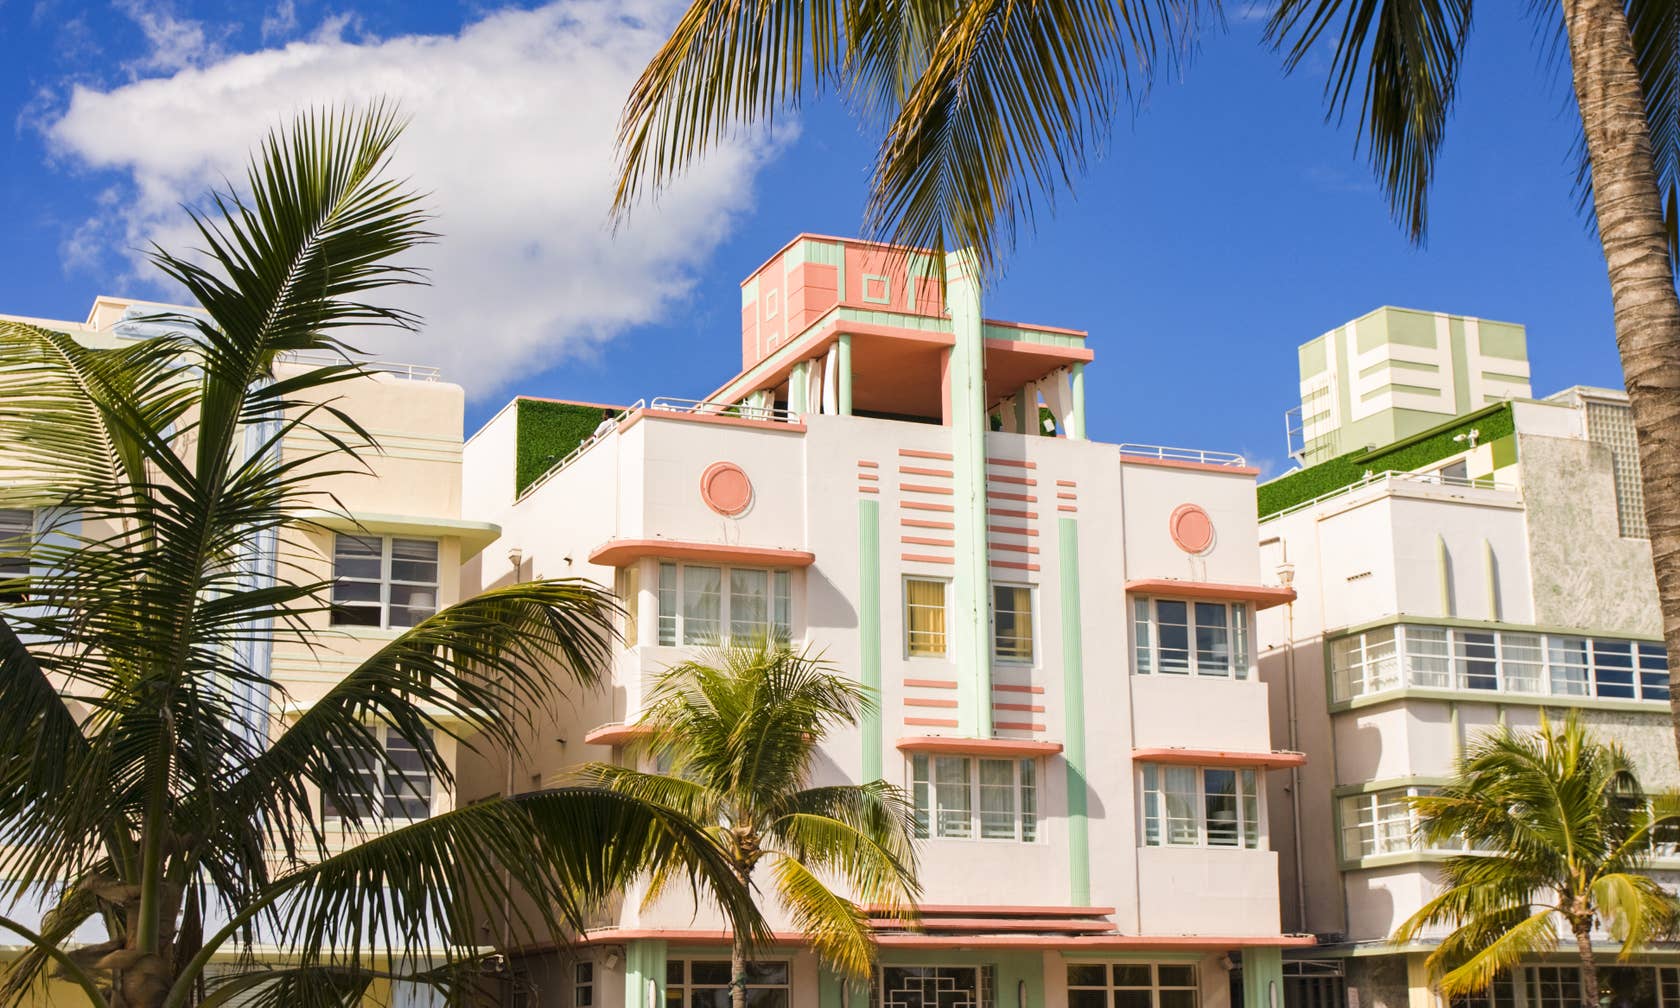 Aluguéis por temporada em South Beach, Miami Beach